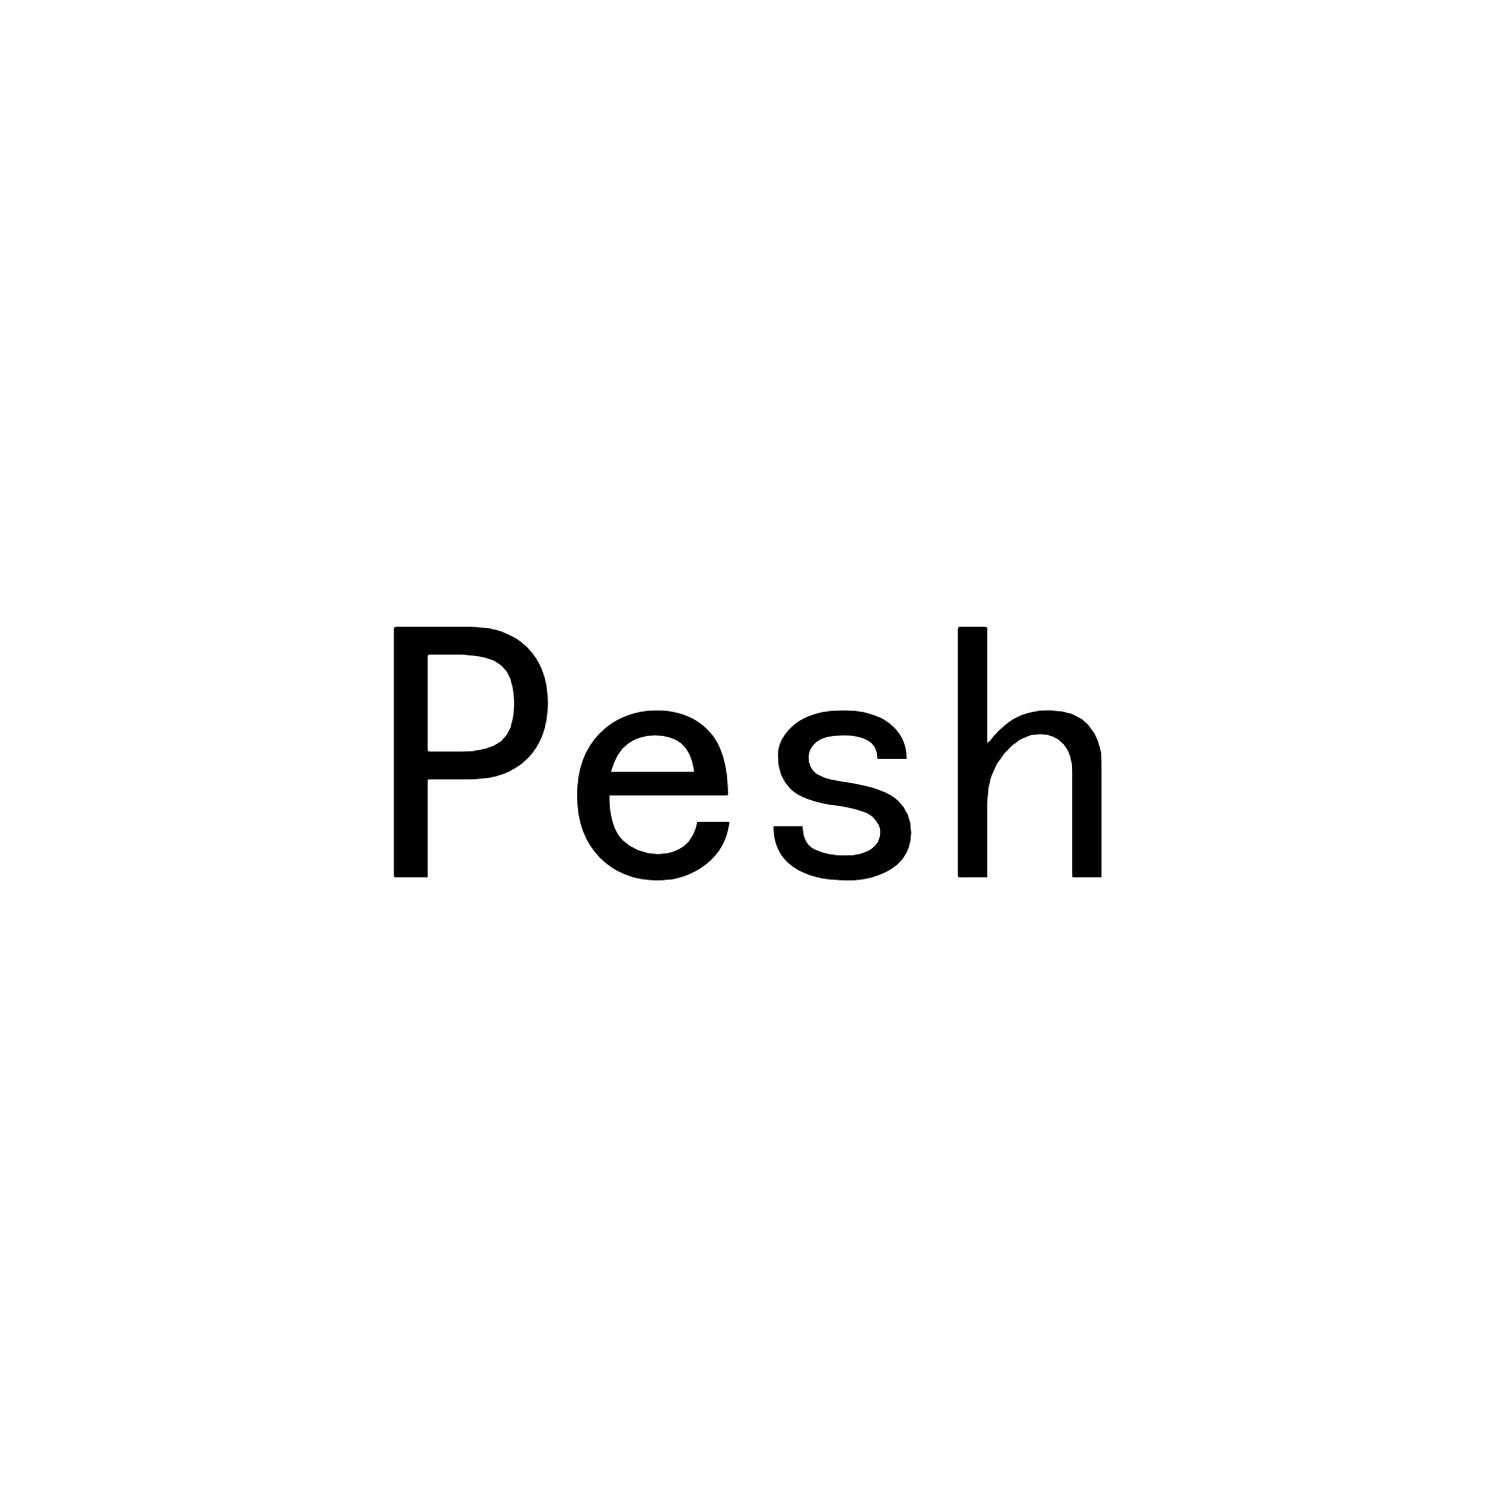 PESH